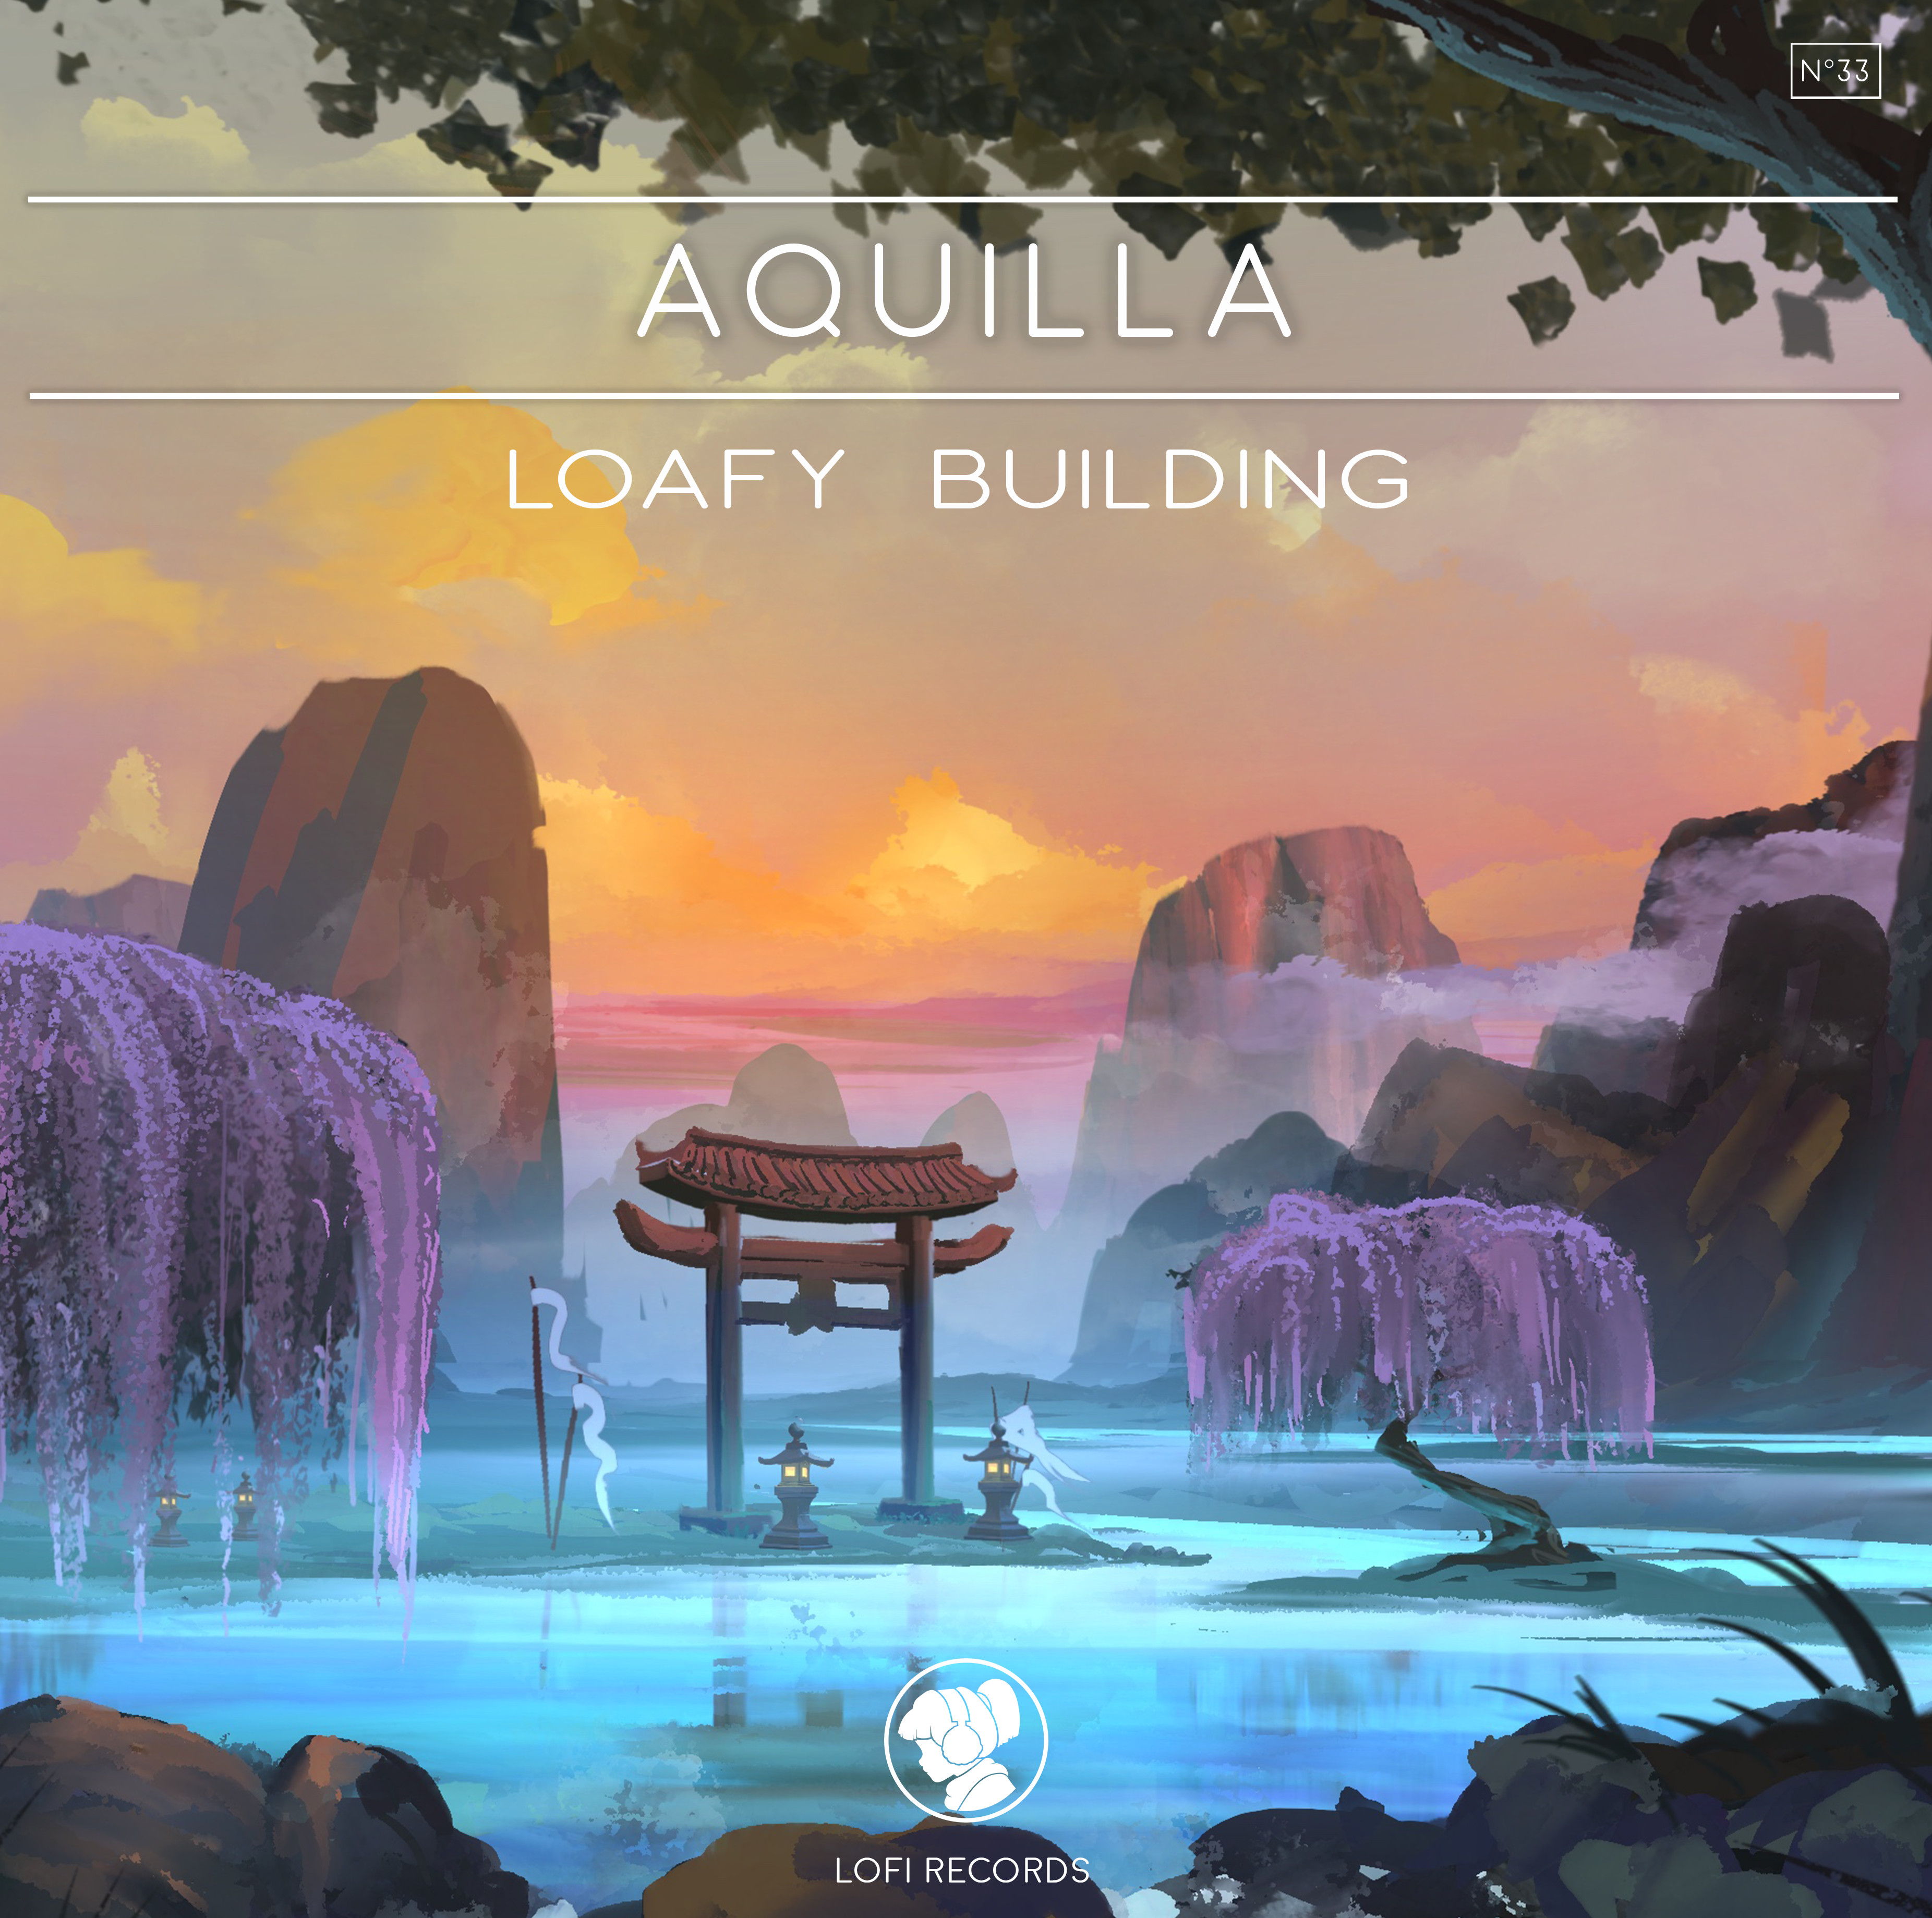 AQUILLA - LOAFY BUILDING